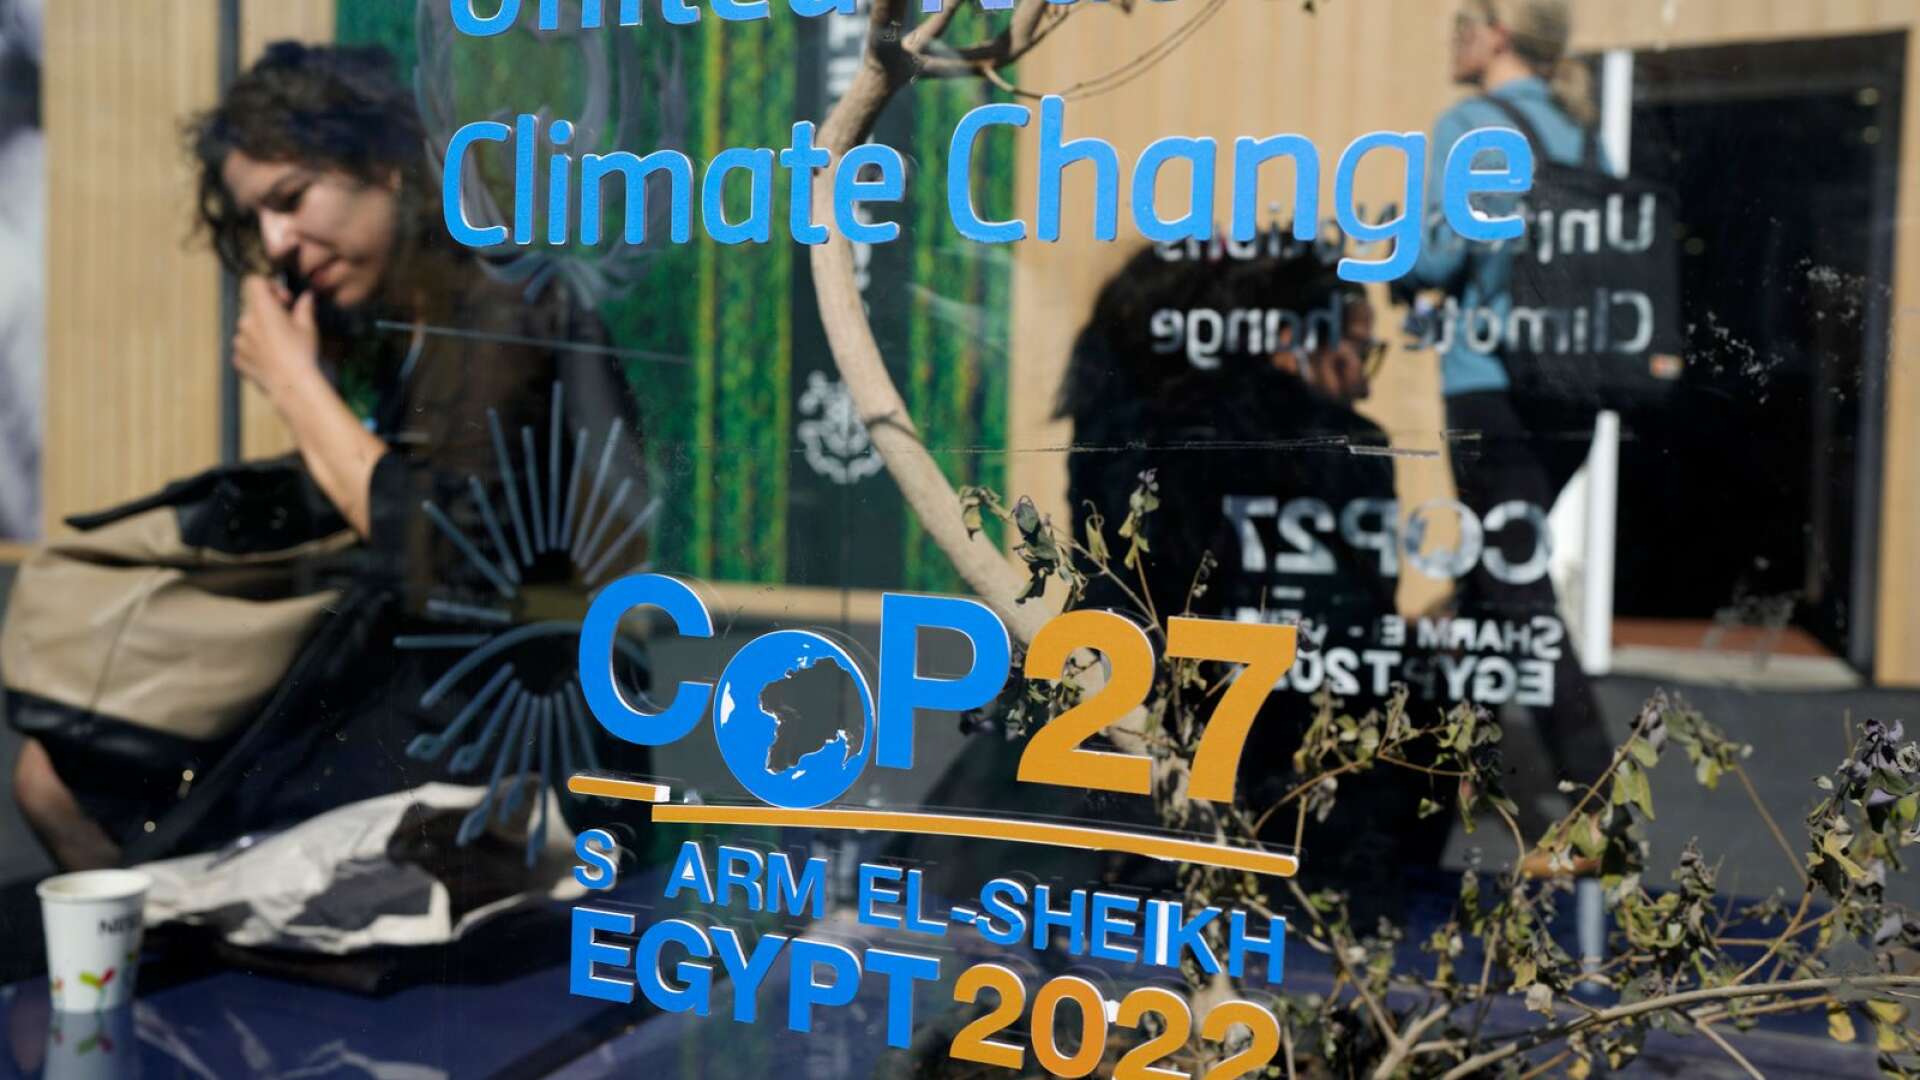 Just nu pågår FN:s stora klimatkonferens i Egypten där svenska ministrar kommer att hävda att den nytillträdda regeringen inte alls sänkt klimatambitionerna.